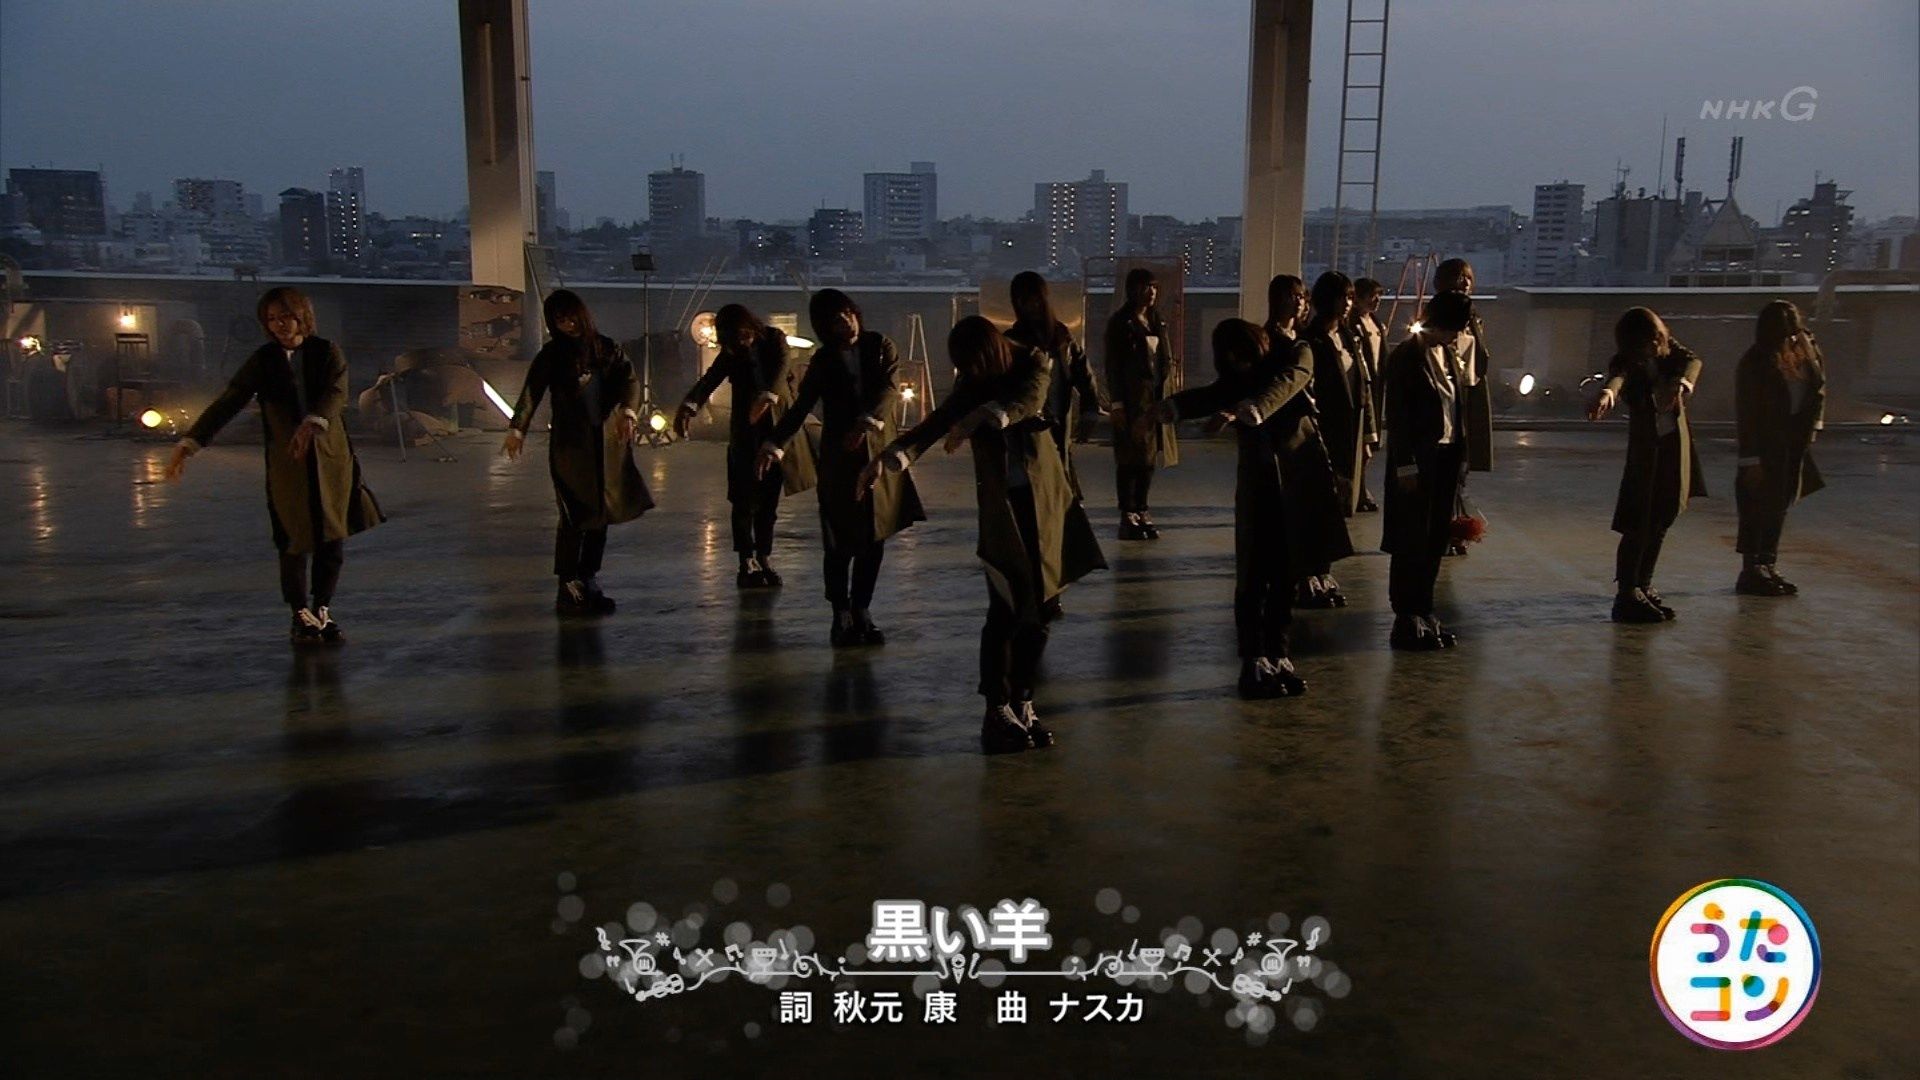 欅坂46 新曲 黒い羊 をnhk うたコン で披露 映像付 ルゼルの情報日記 楽天ブログ